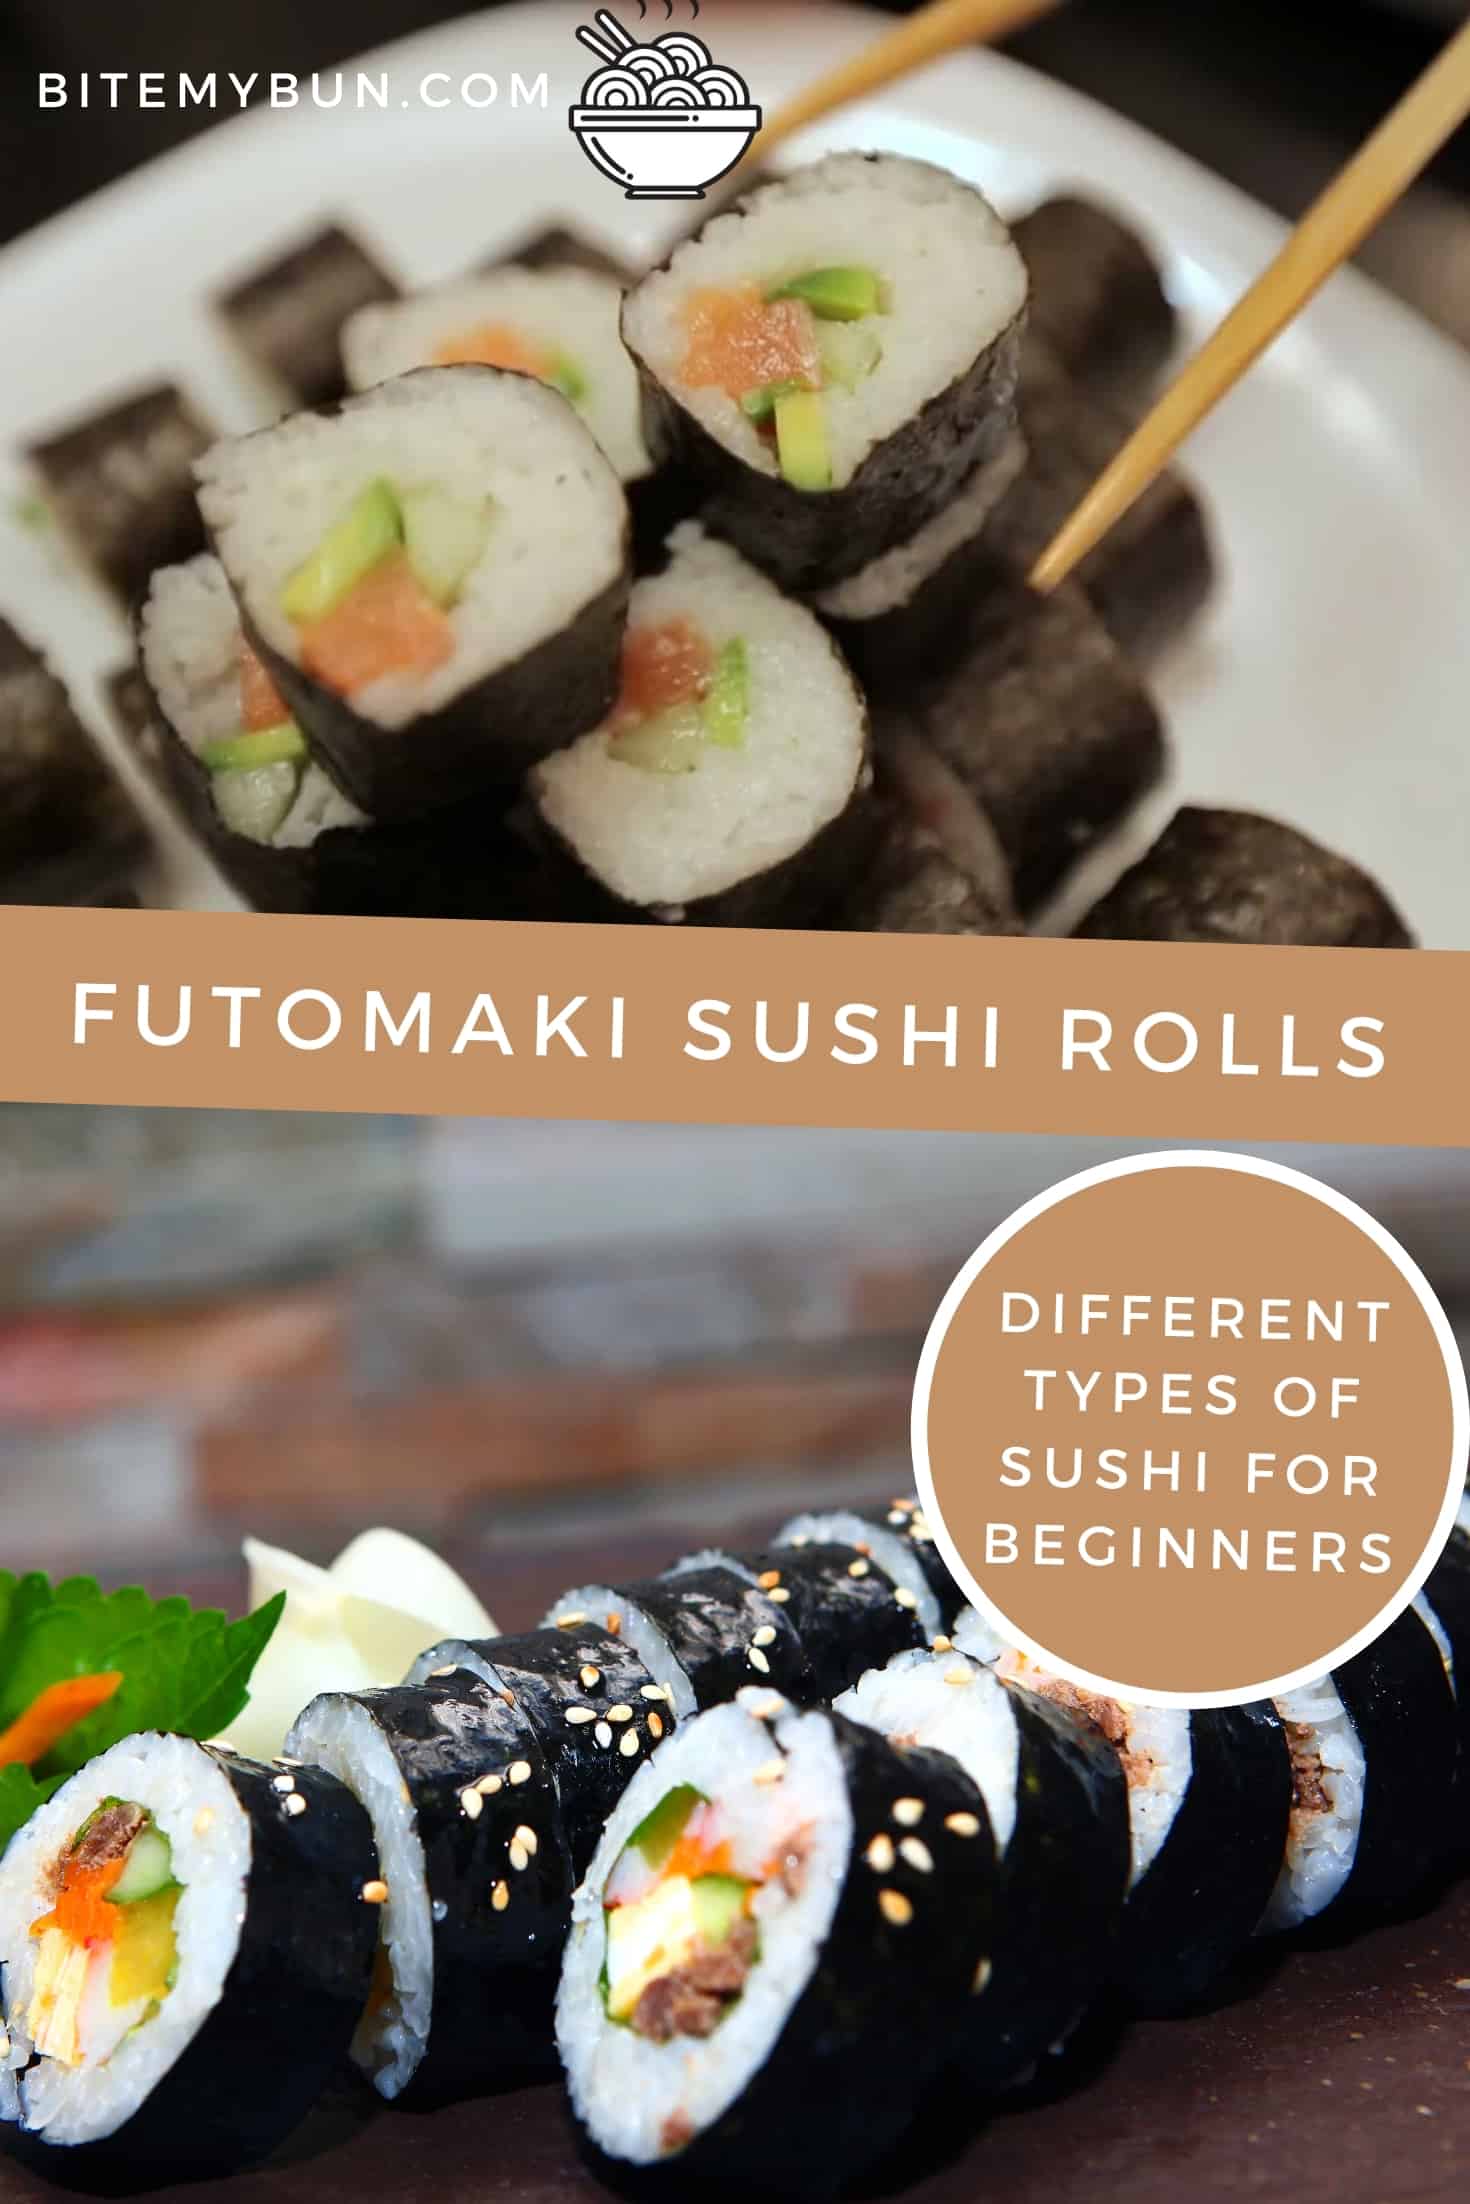 Futomaki sushi rolls